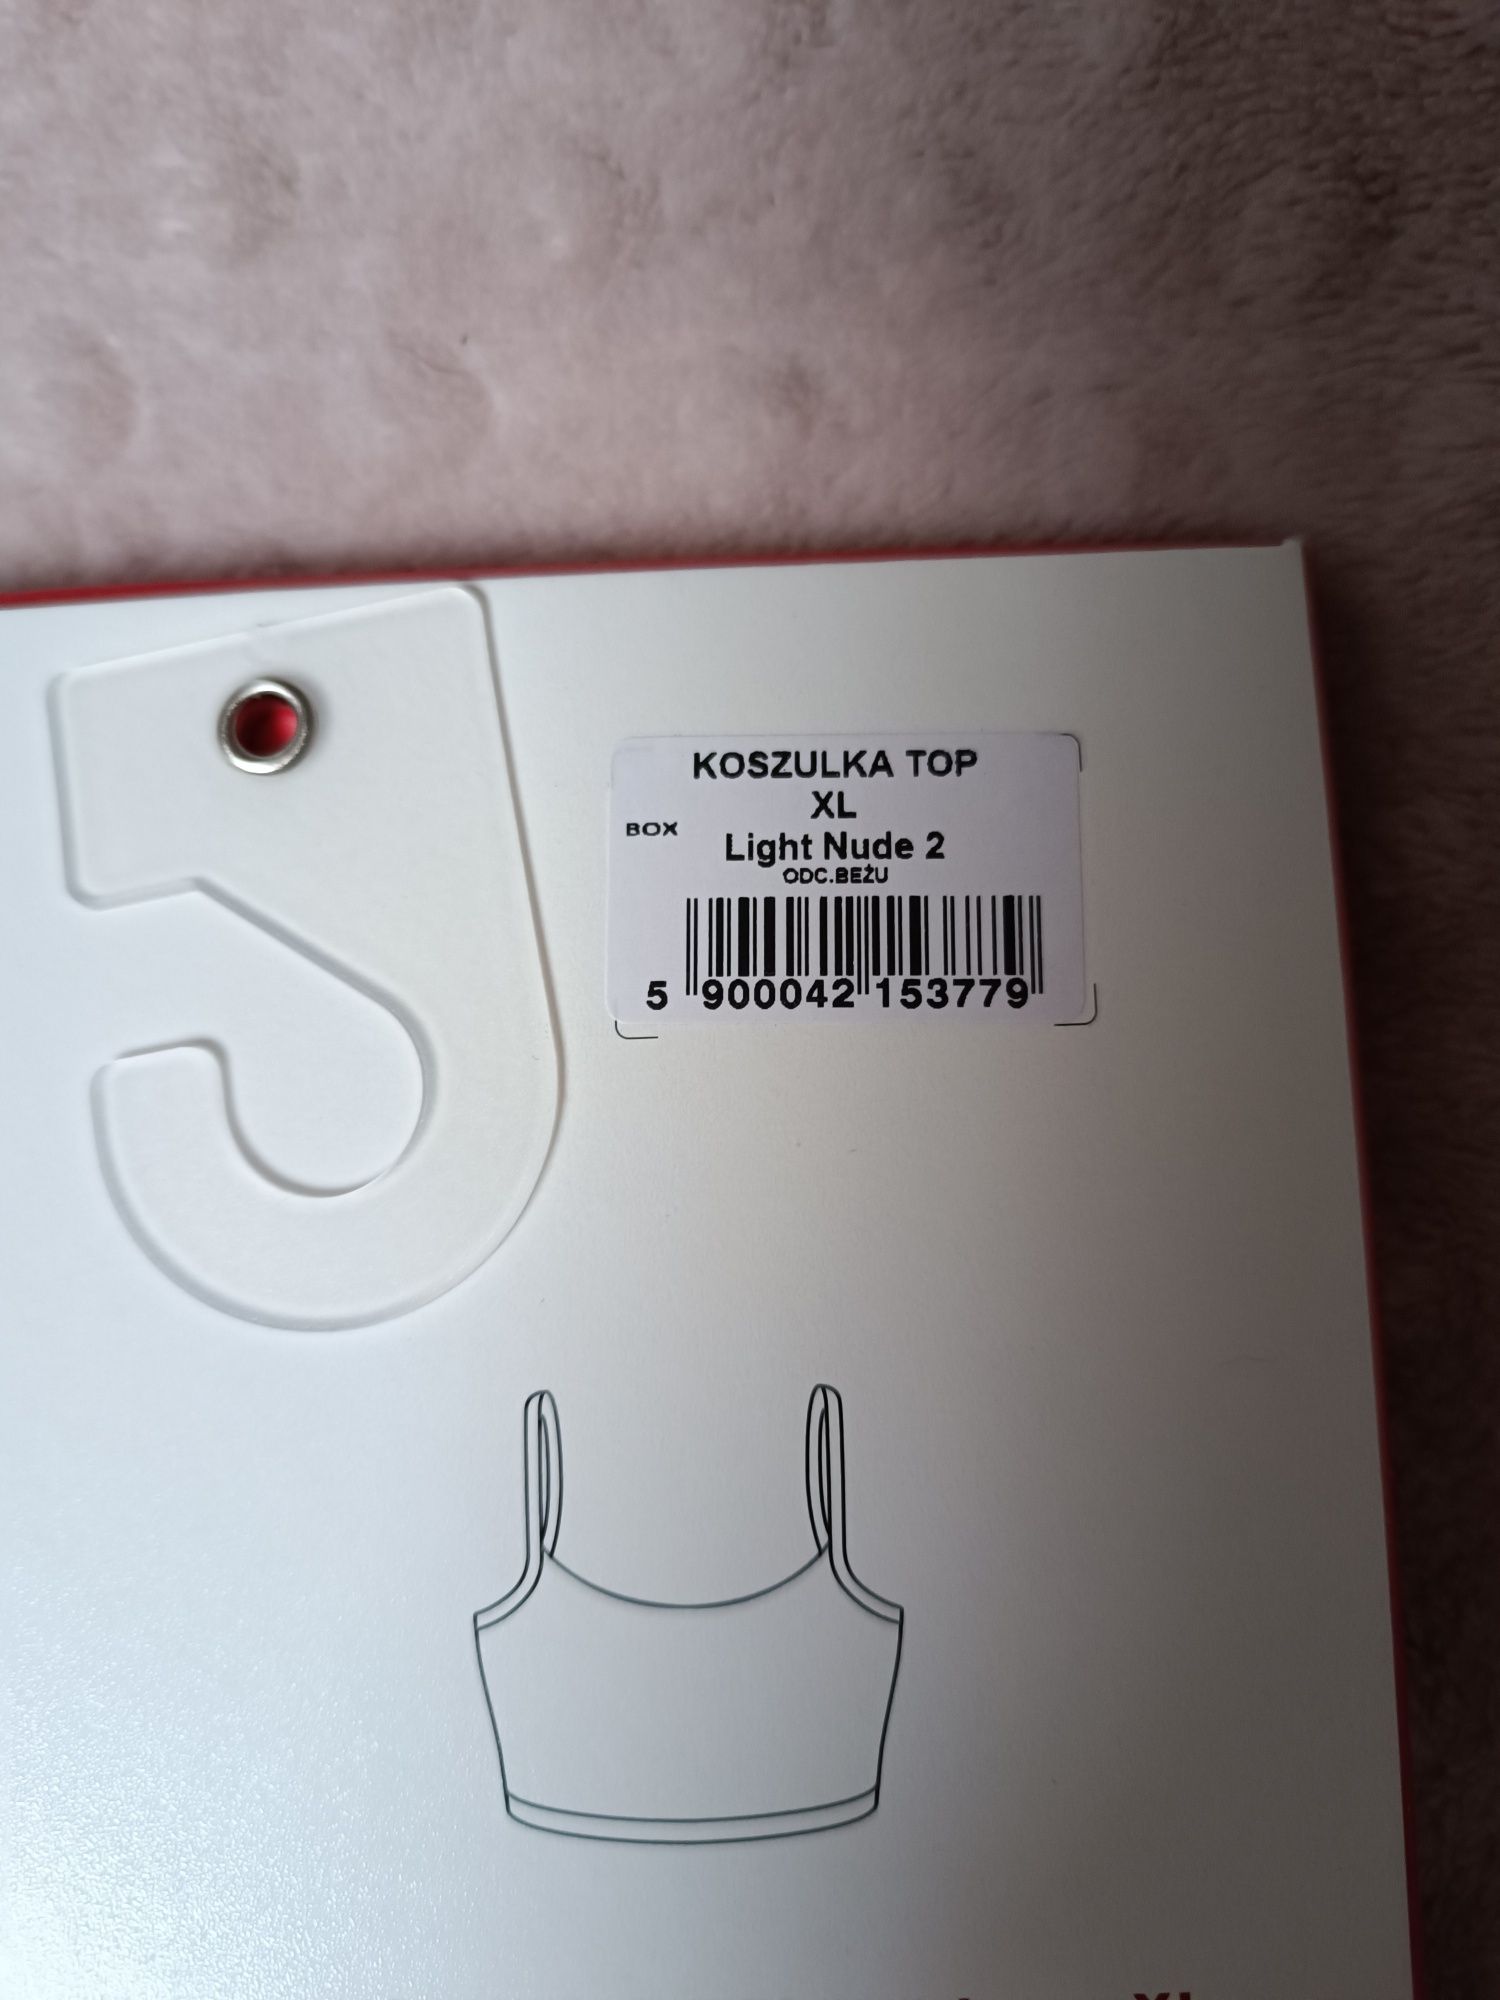 Nowy 2 pack top damski biustonosz sportowy Gatta XL beż nude koszulka